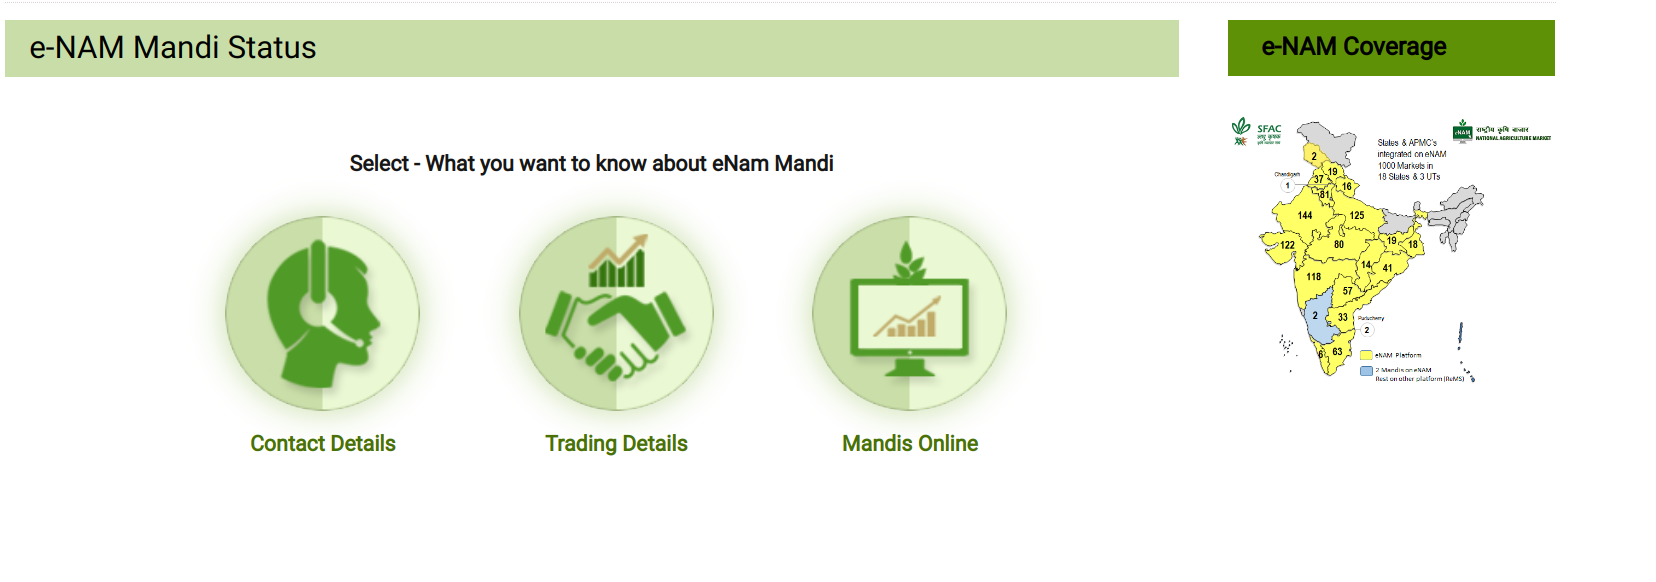 E-nam portal online mandi search process